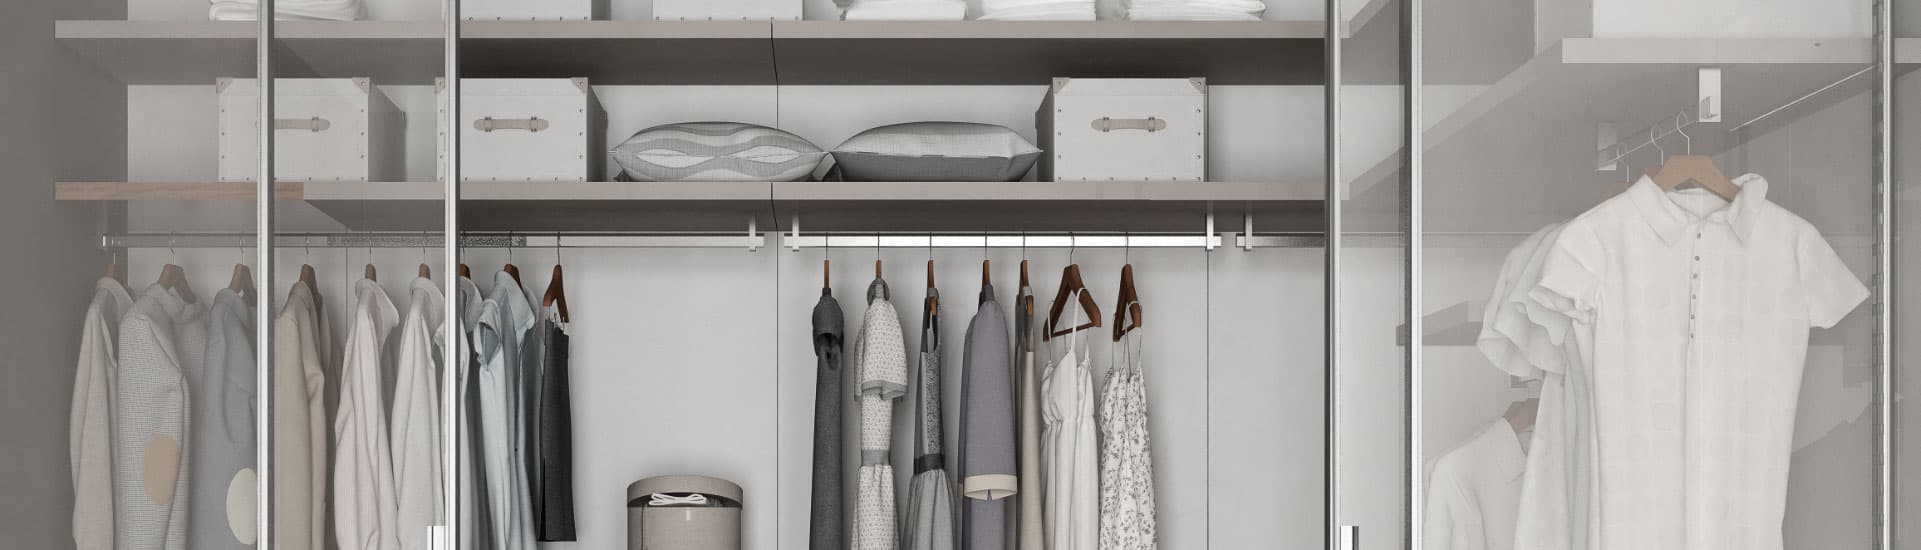 Rangements de vêtements pour une chambre ordonnée - IKEA Suisse